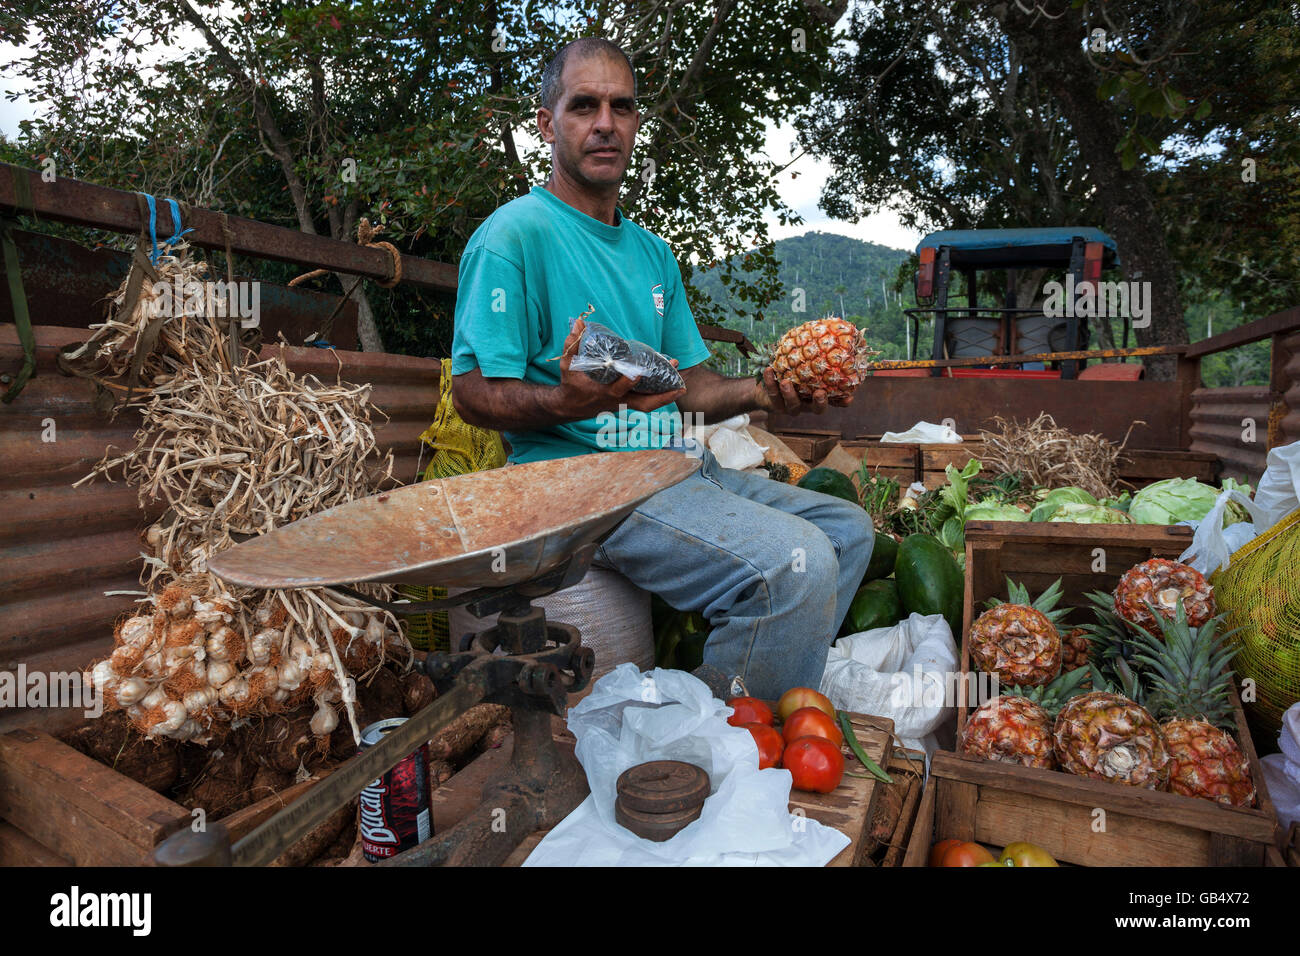 Vendeur de fruits, légumes de vendeur, la vente sur la plate-forme d'une remorque de voiture, Las Terrazas, Artemisa Province, Cuba Banque D'Images